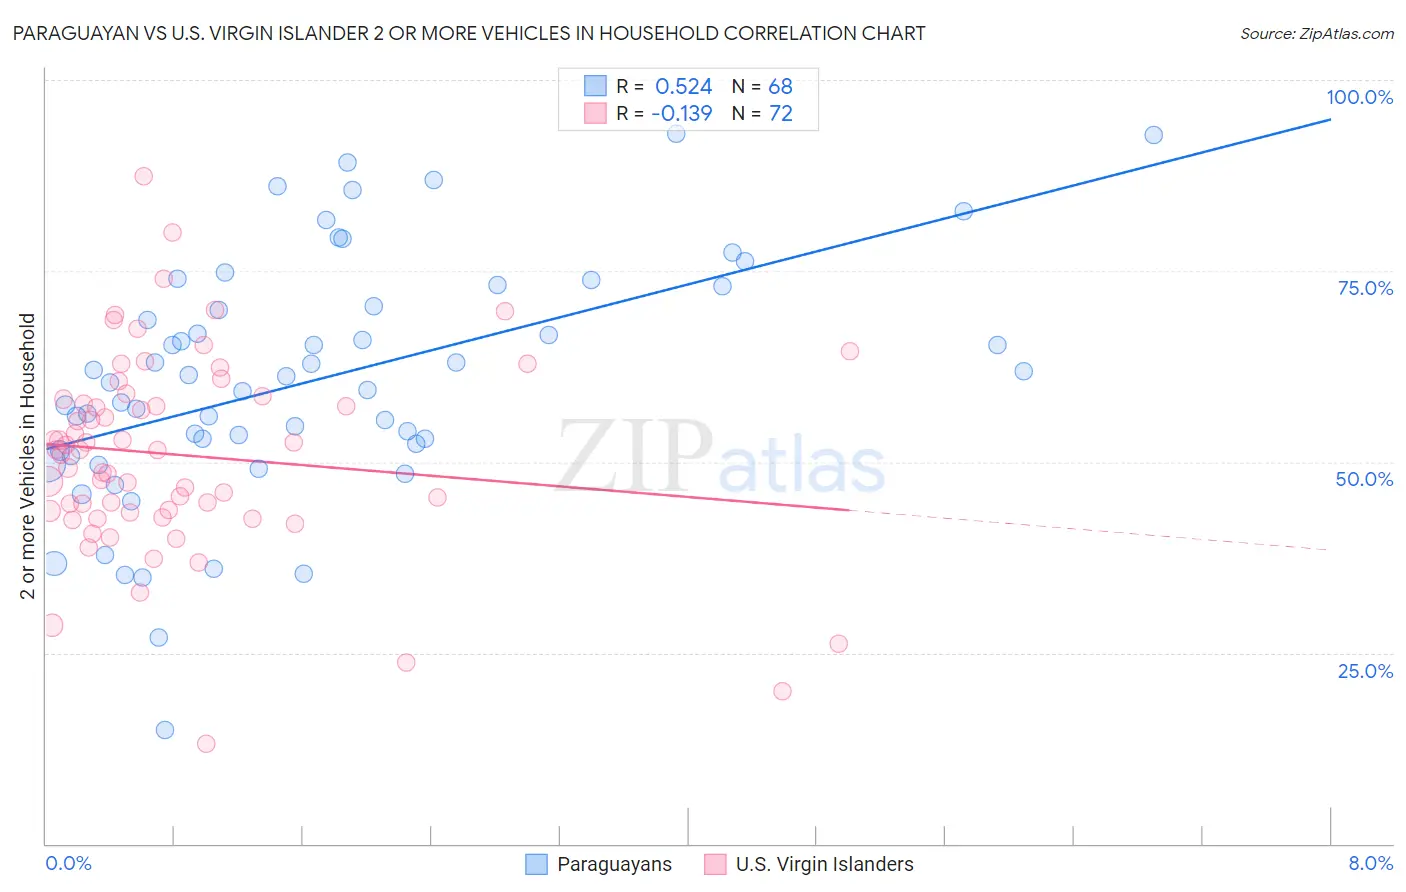 Paraguayan vs U.S. Virgin Islander 2 or more Vehicles in Household